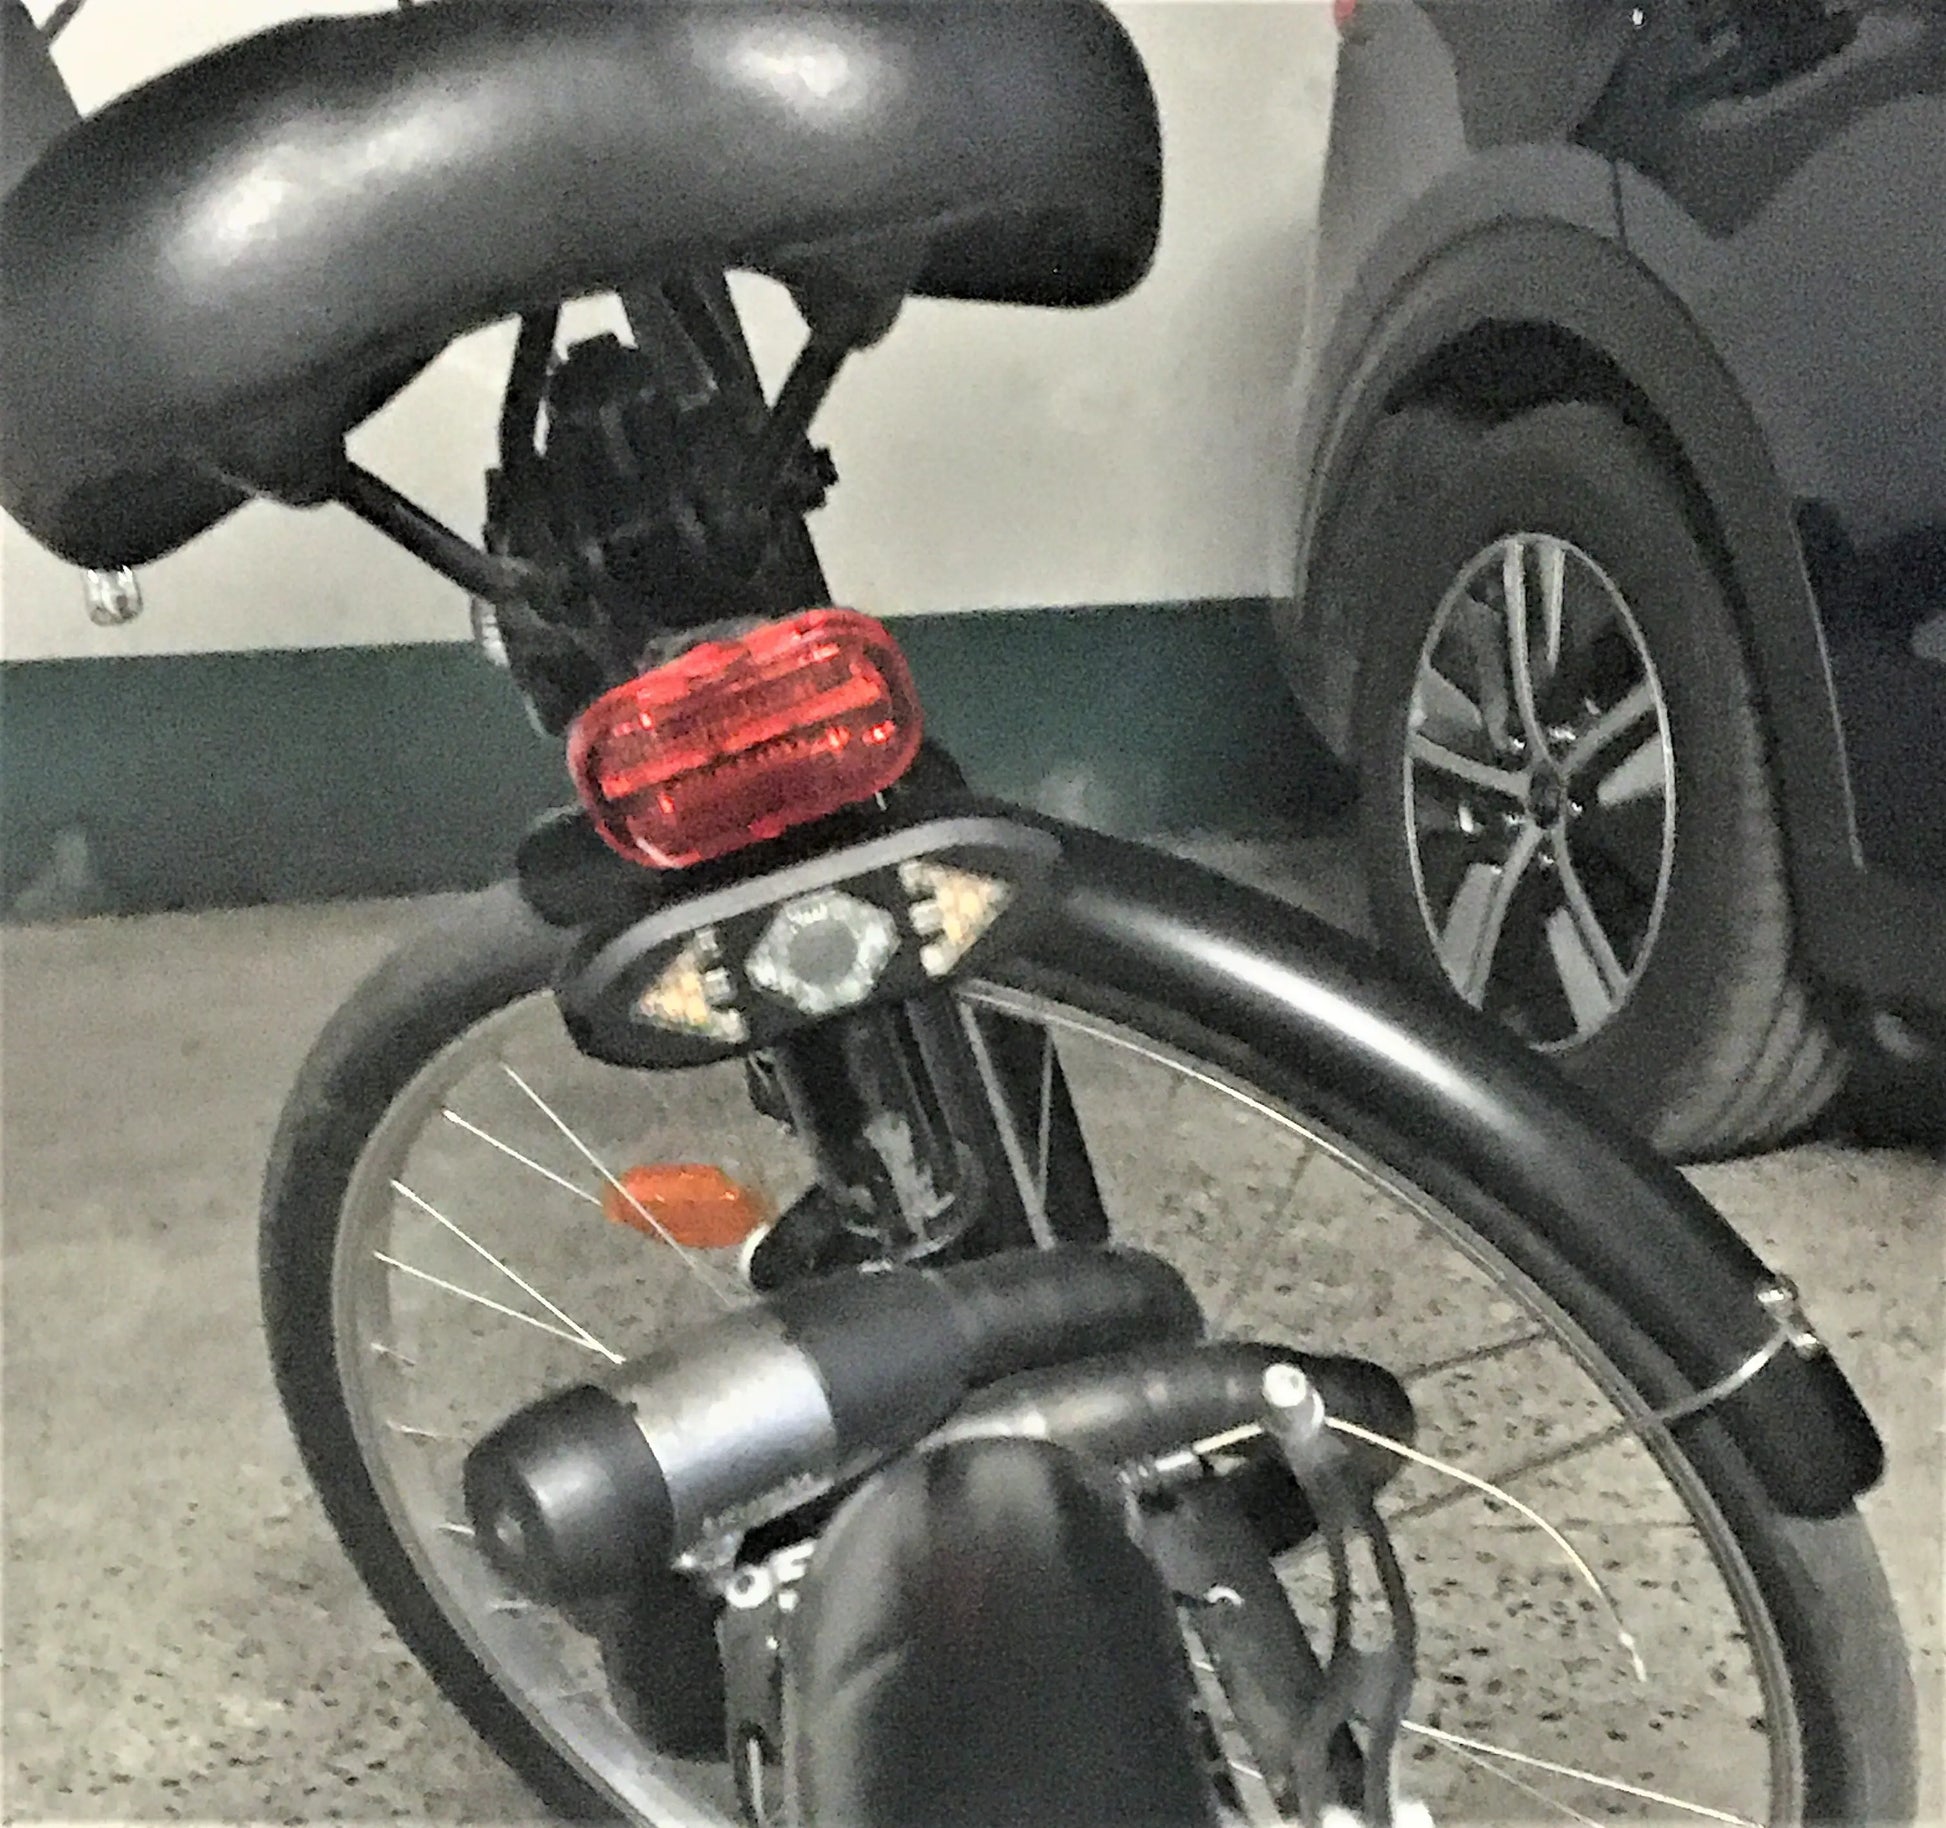 Eclairage arrière vélo puissant -clignotants Bluetooth télécommande - 1 acheté 1 offert okem